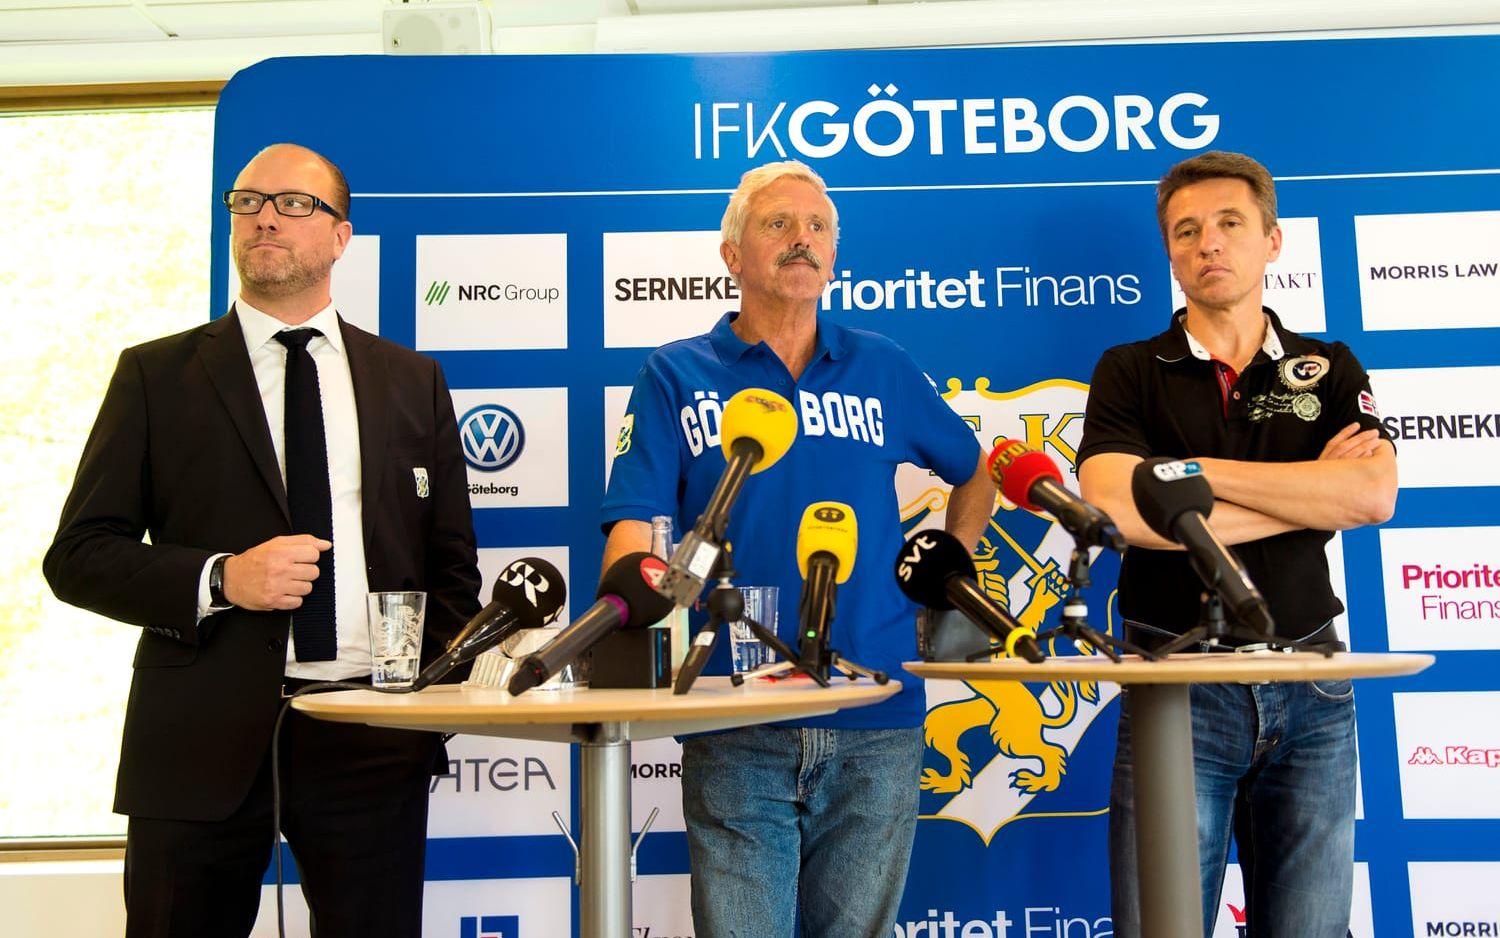 En timme efter presskonferens uppe i Stockholm hölls en presskonferens på Kamratgården: "– Det var otroligt viktigt för oss att sätta ner foten nu och markera. Jag förstår att fansen hade sett framemot matchen men det var viktigt för oss att sätta ner foten för både fotbollen och idrotten, säger Mats Gren".